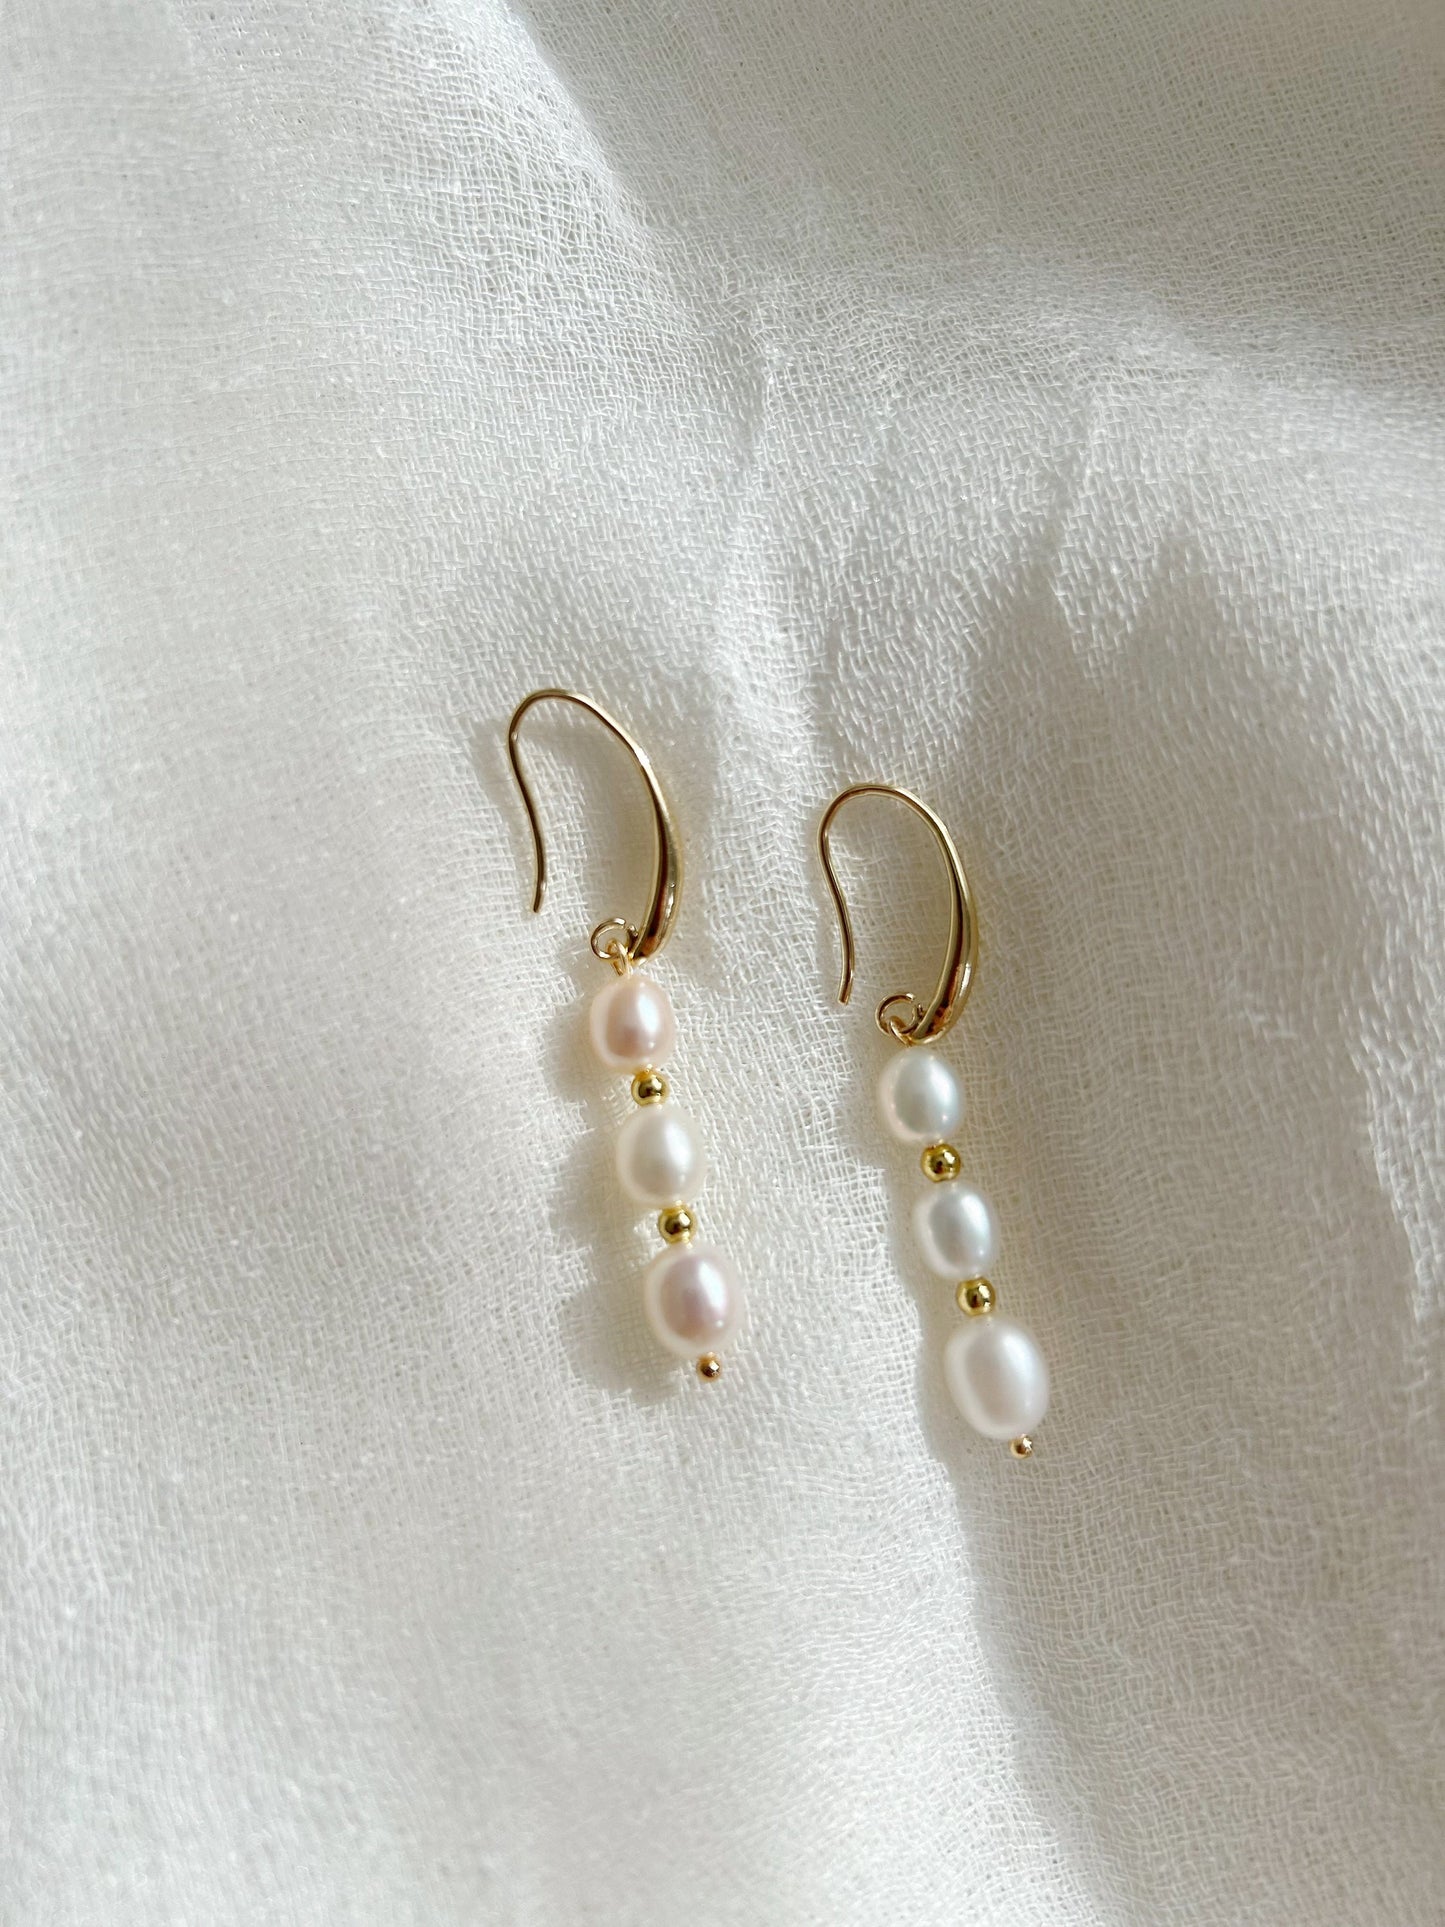 Triple pearl ear drop, freshwater pearl earrings